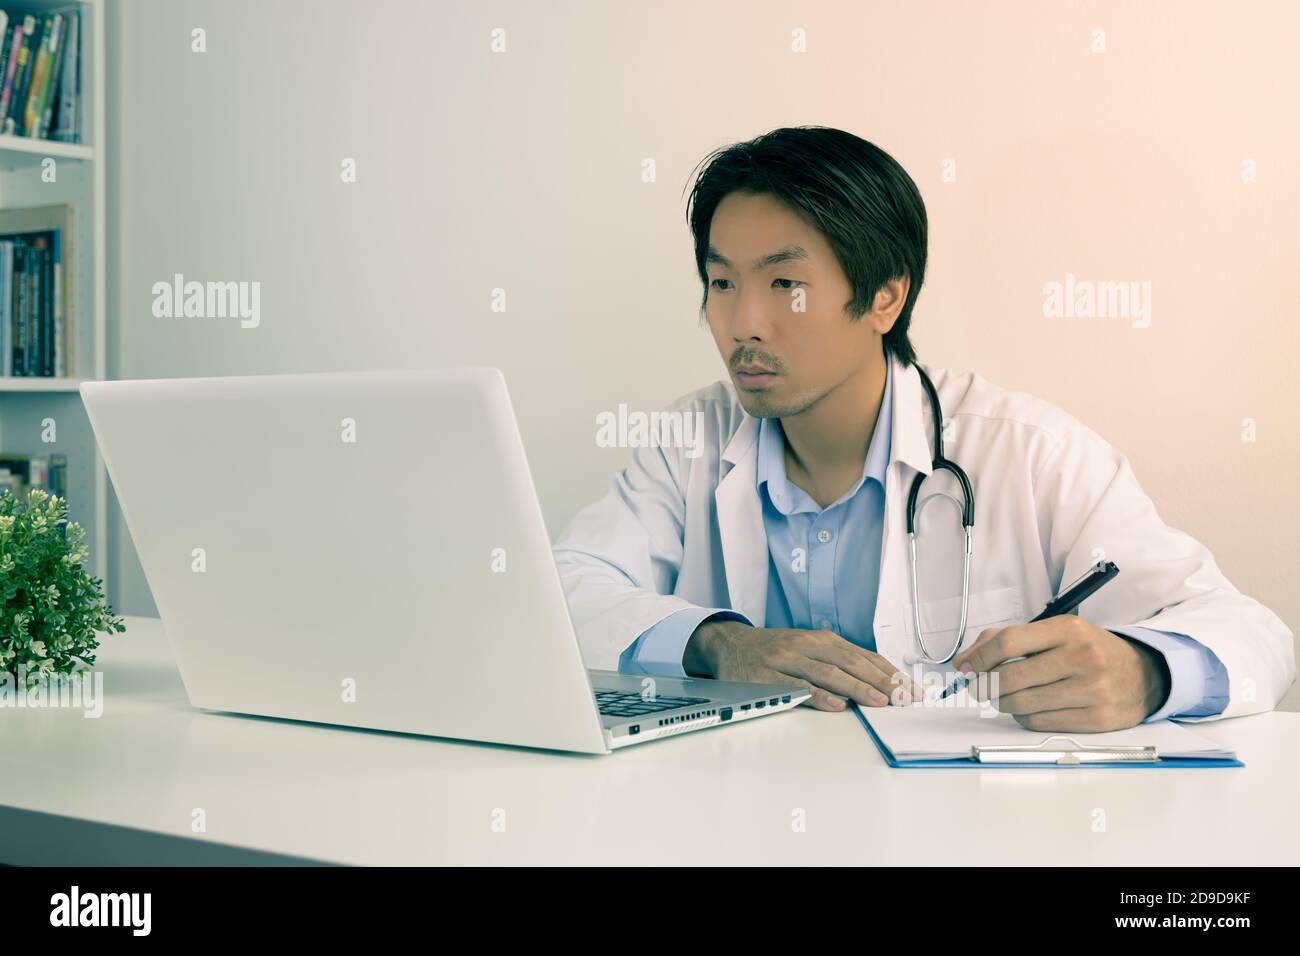 Junge asiatische Arzt Mann im Labor Mantel oder Kleid mit Stethoskop Schreiben Experimentelle Ergebnisse Bericht und mit Laptop-Computer auf Arzttisch im Büro in Stockfoto